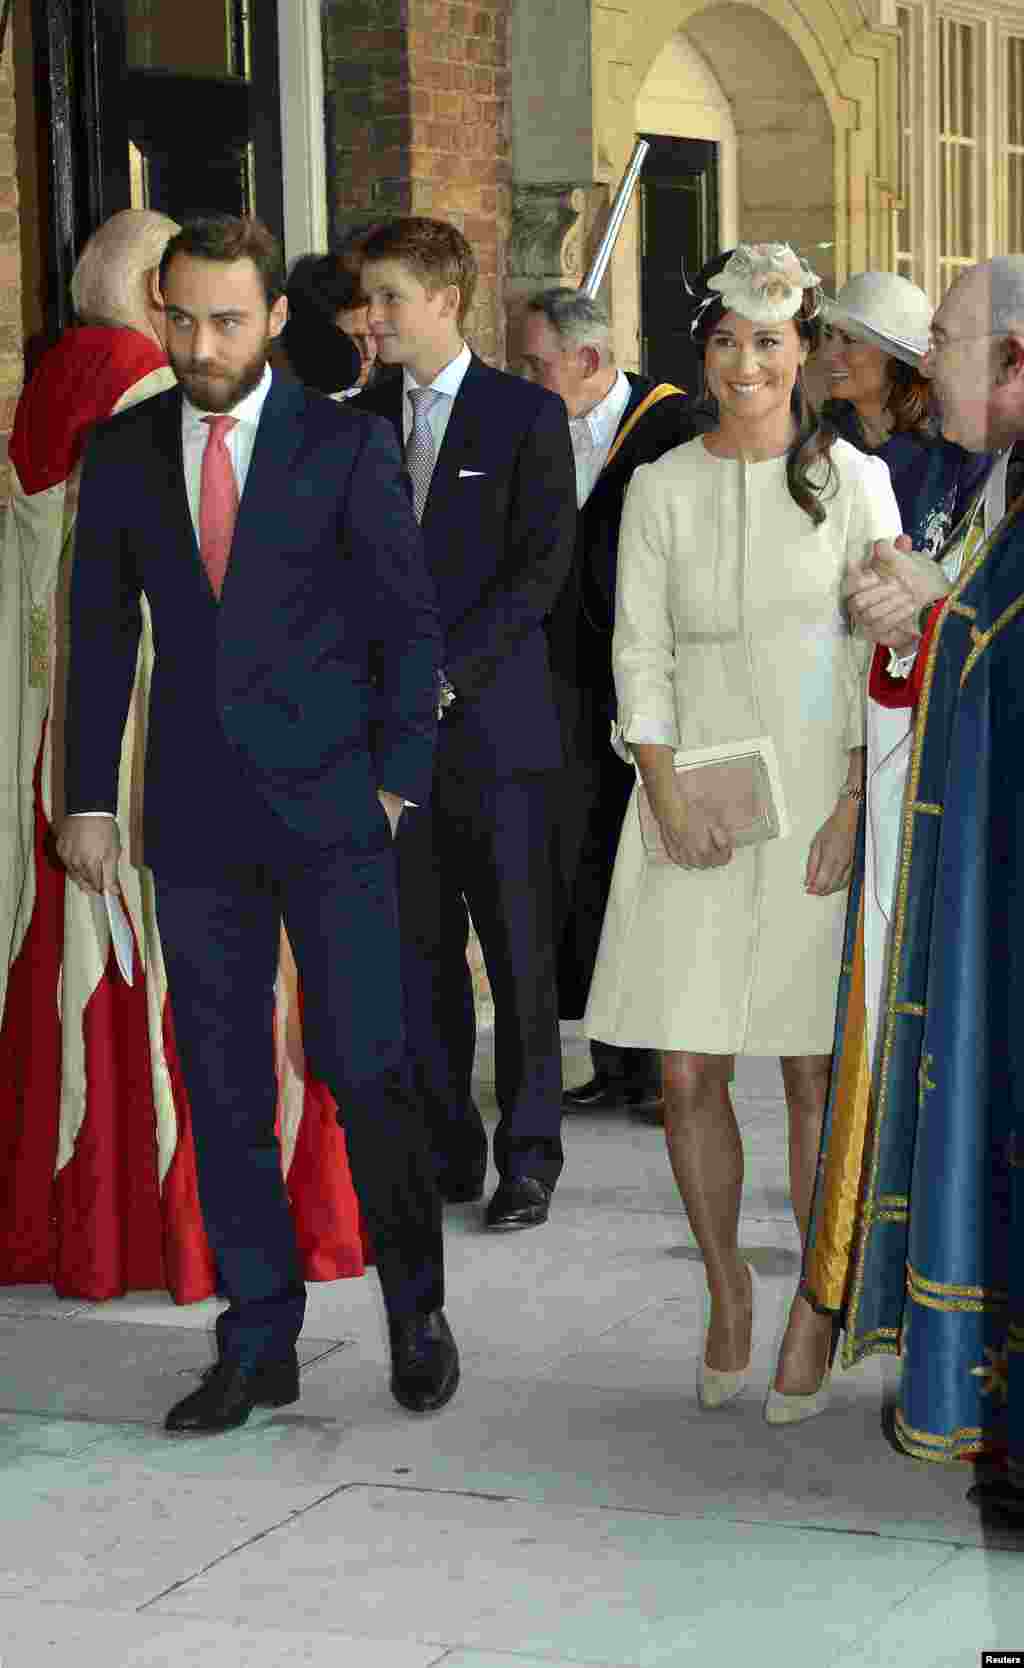 شہزادی کیتھرین میڈیلٹن کے اہل خانہ میں ان کی والدہ کارل اور والد مائیکل کے ساتھ بہن پیپا اور بھائی جیمس بھی تقریب میں شامل تھے۔